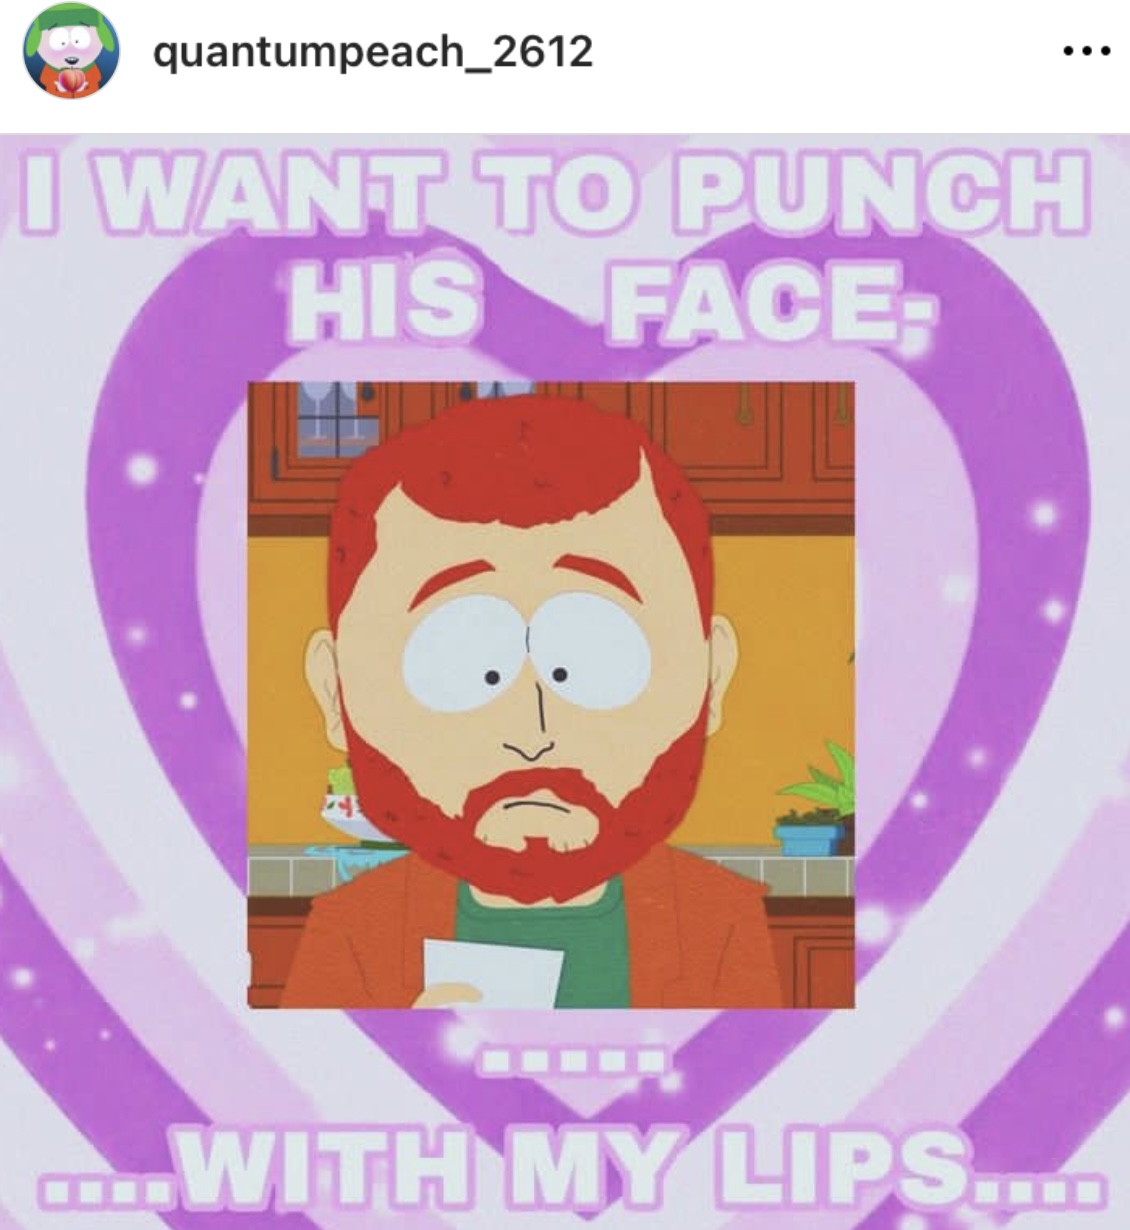 Weird South Park fan